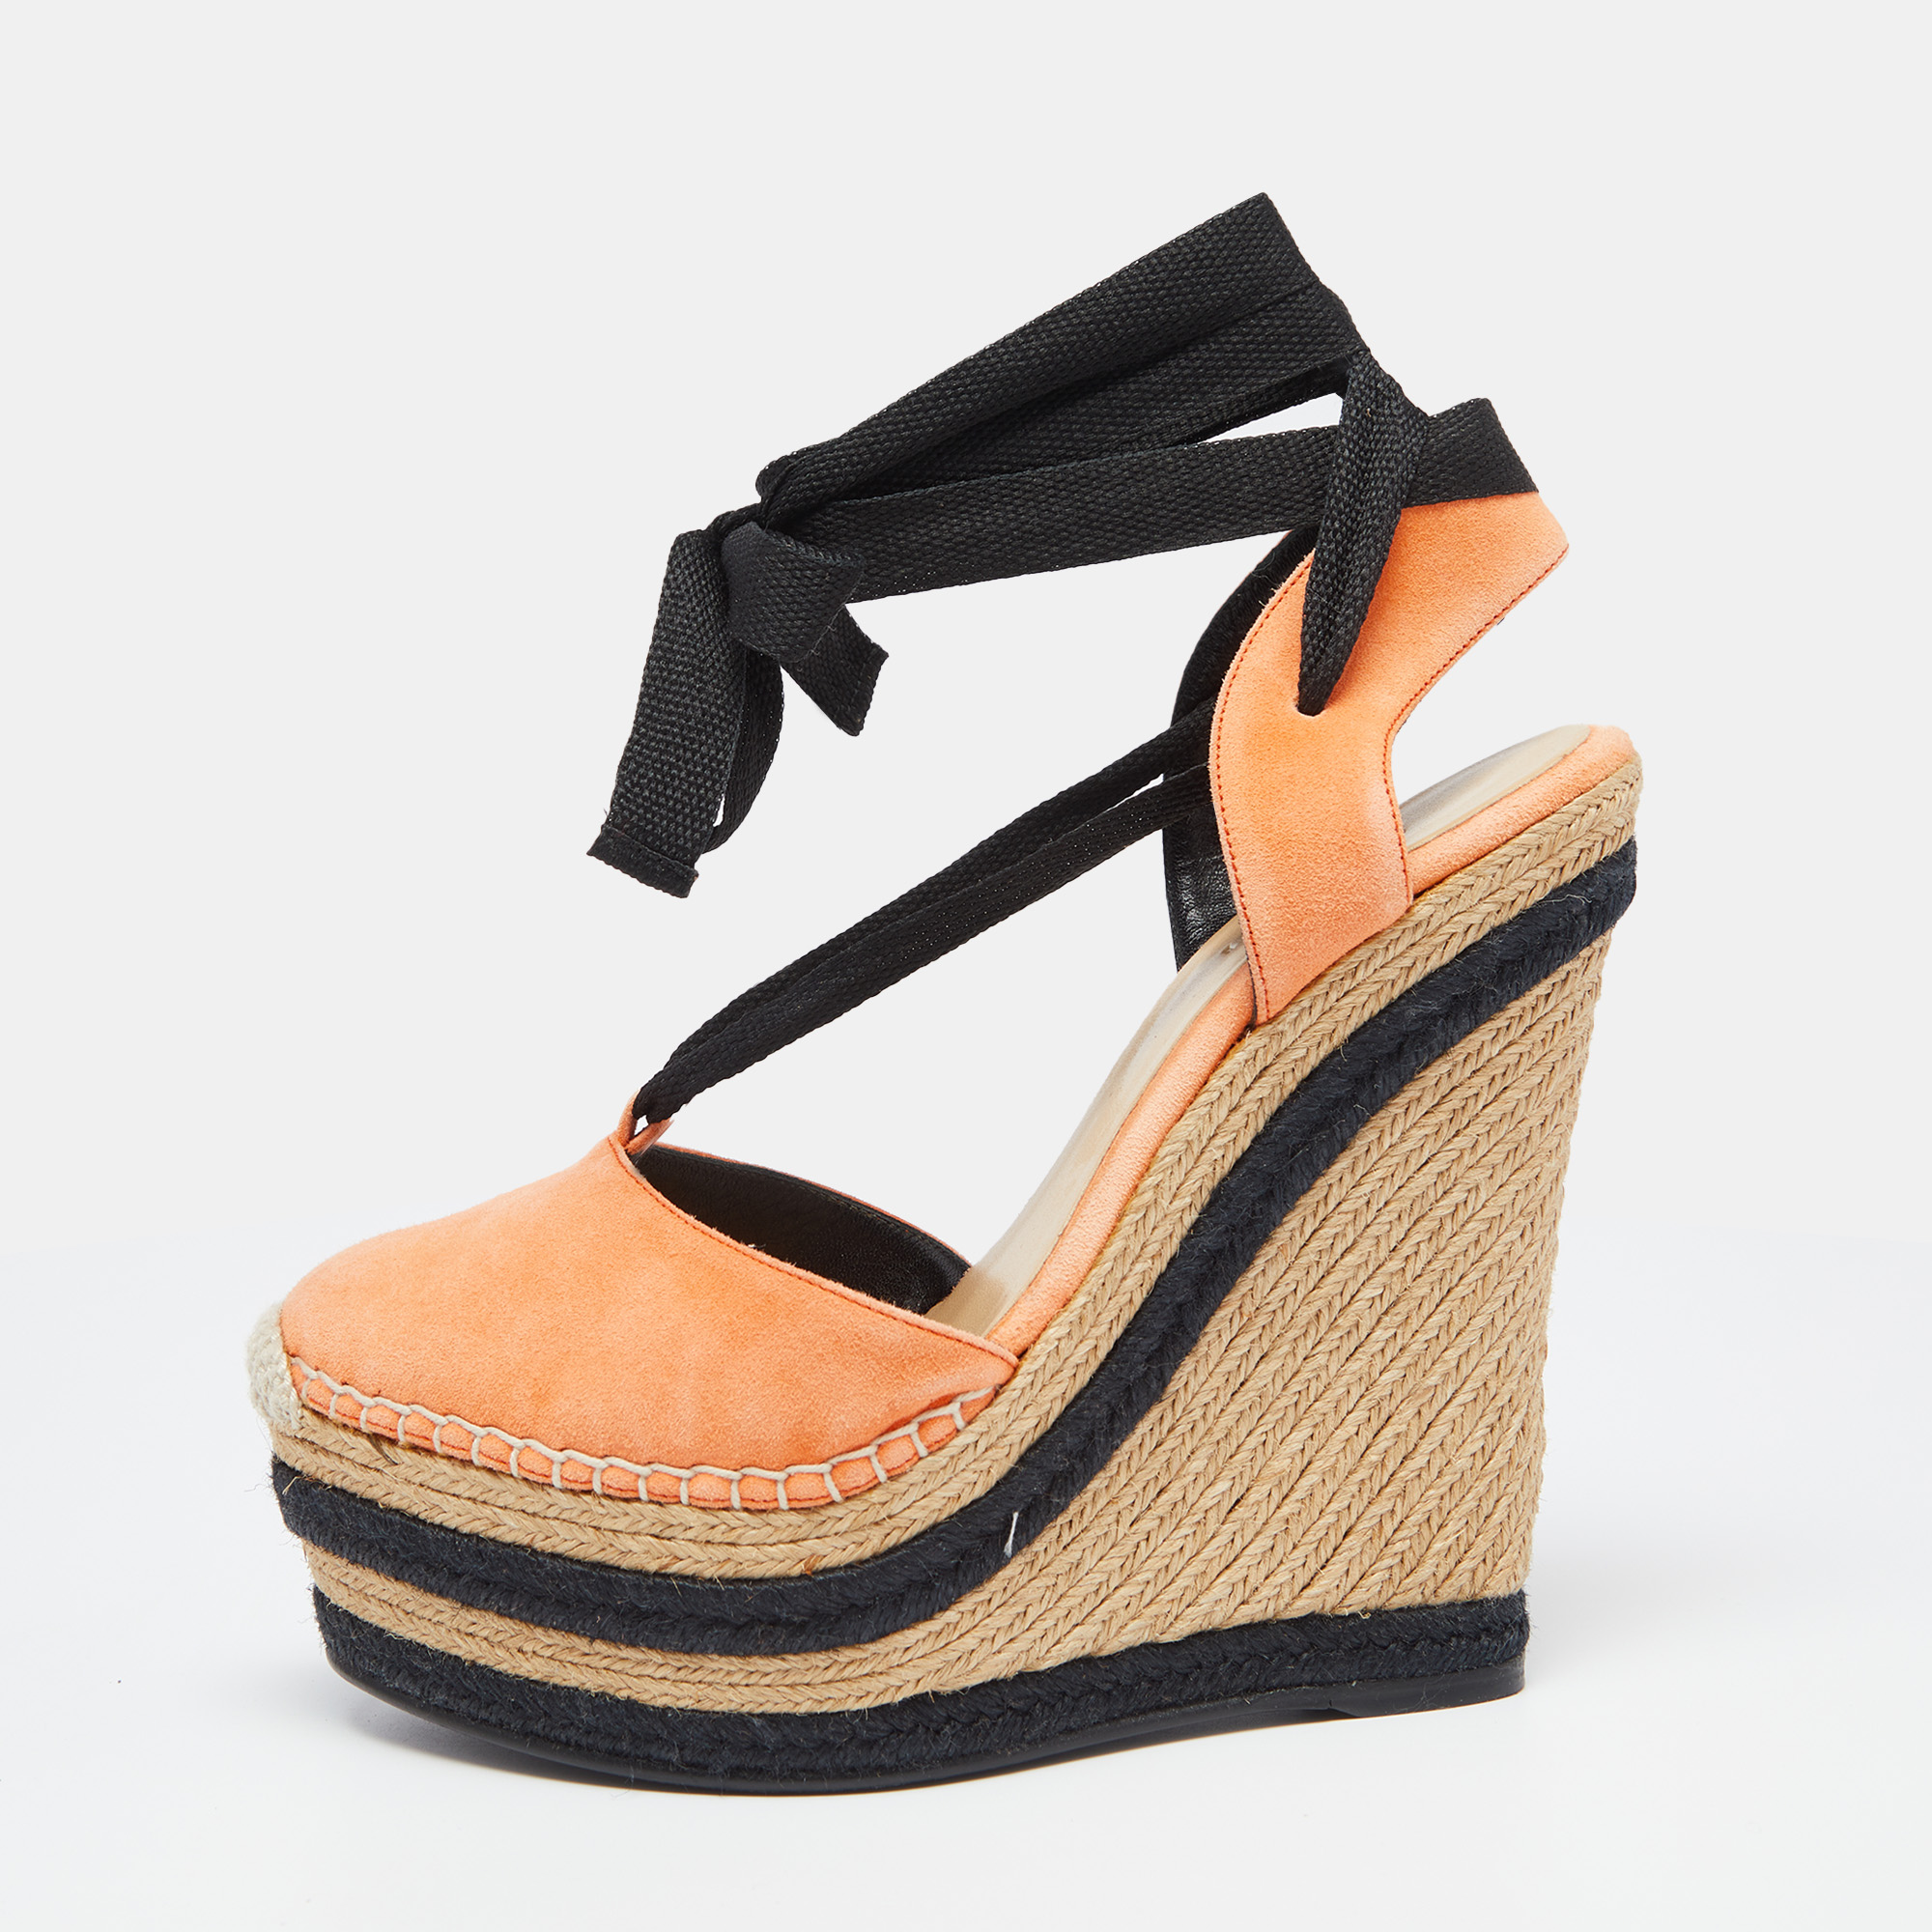 

Gucci Orange/Black Suede Wedge Espadrille Sandals Size